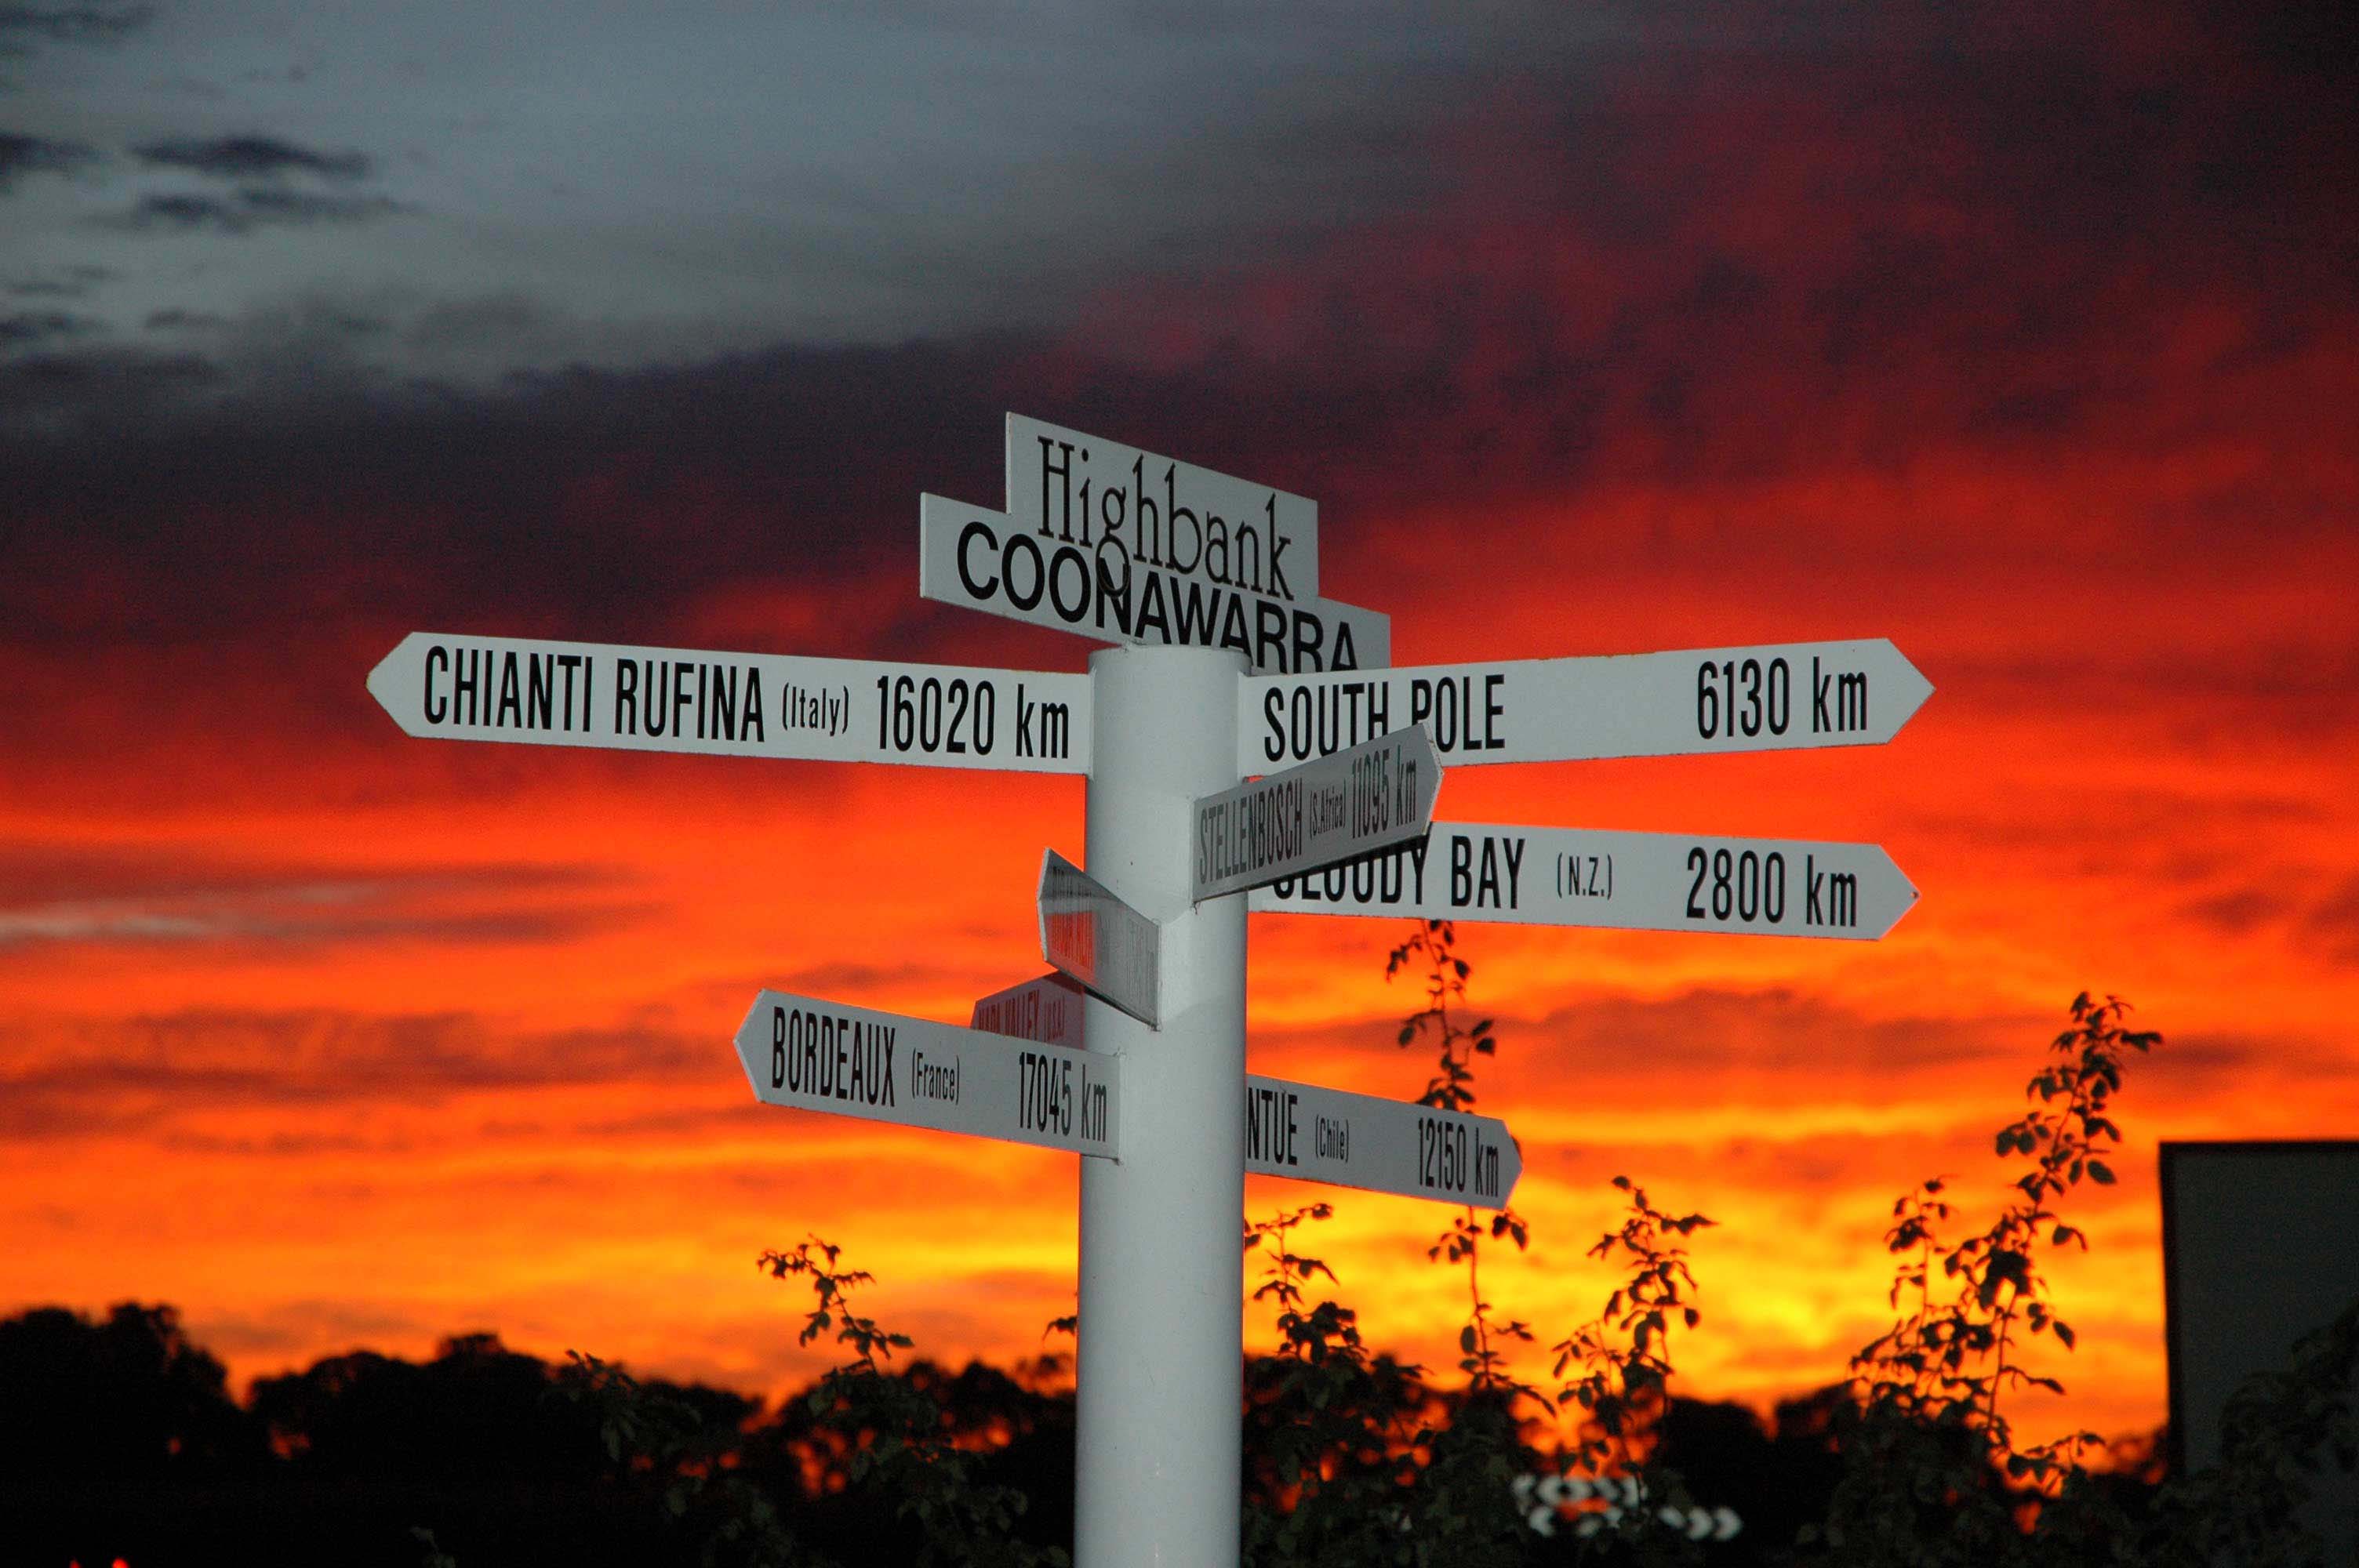 Highbank signs at vineryard during sunset 